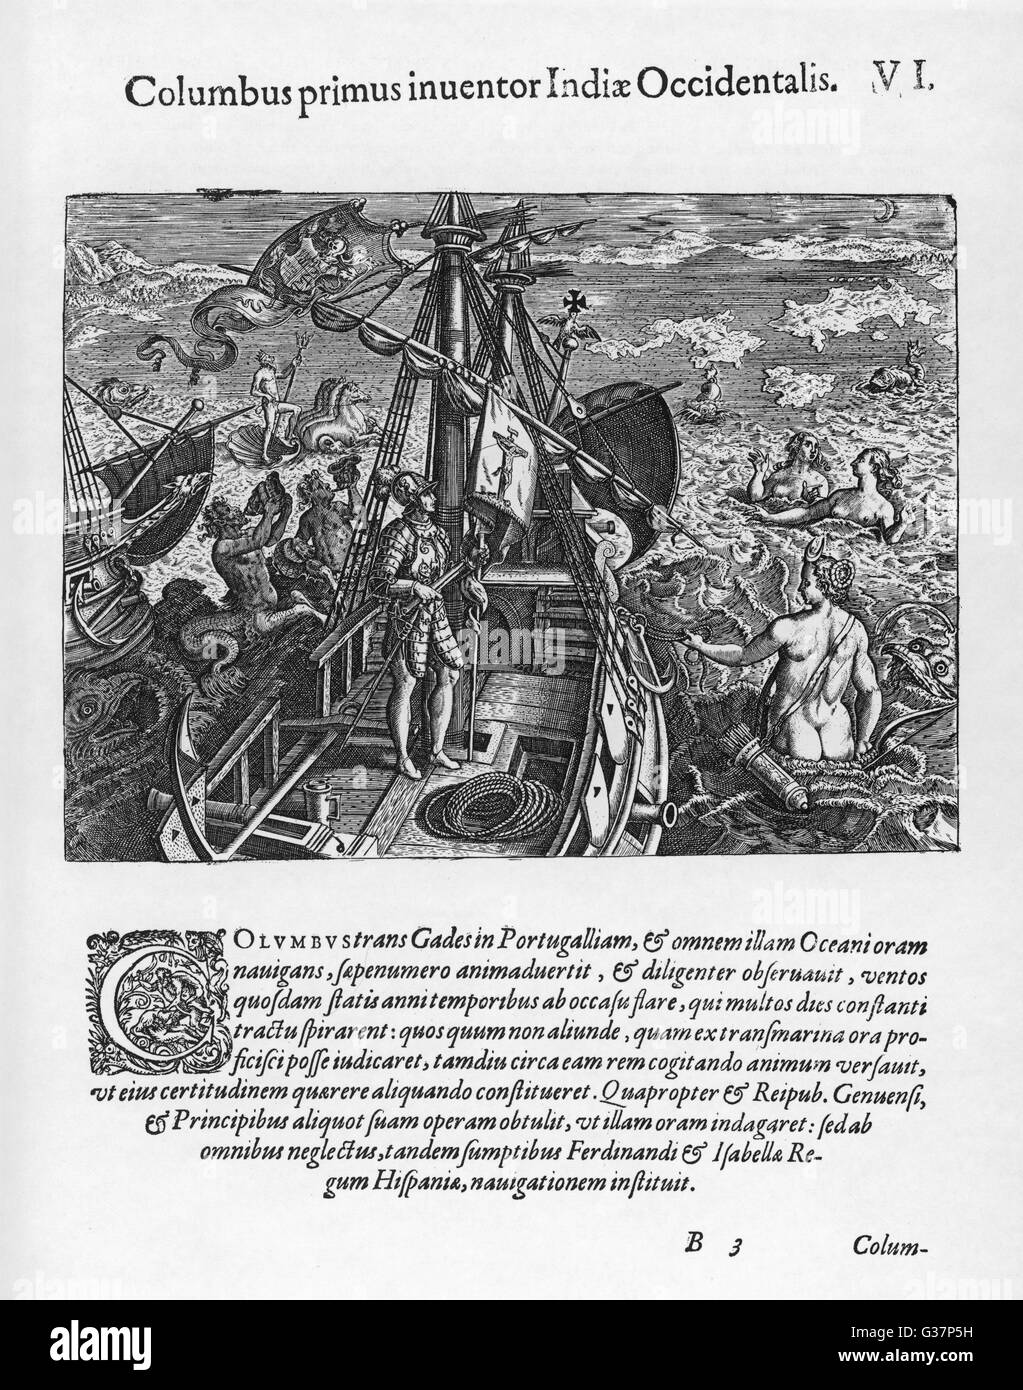 Christopher Columbus auf dem Weg in die neue Welt - eine allegorische Darstellung.       Datum: 1492 Stockfoto